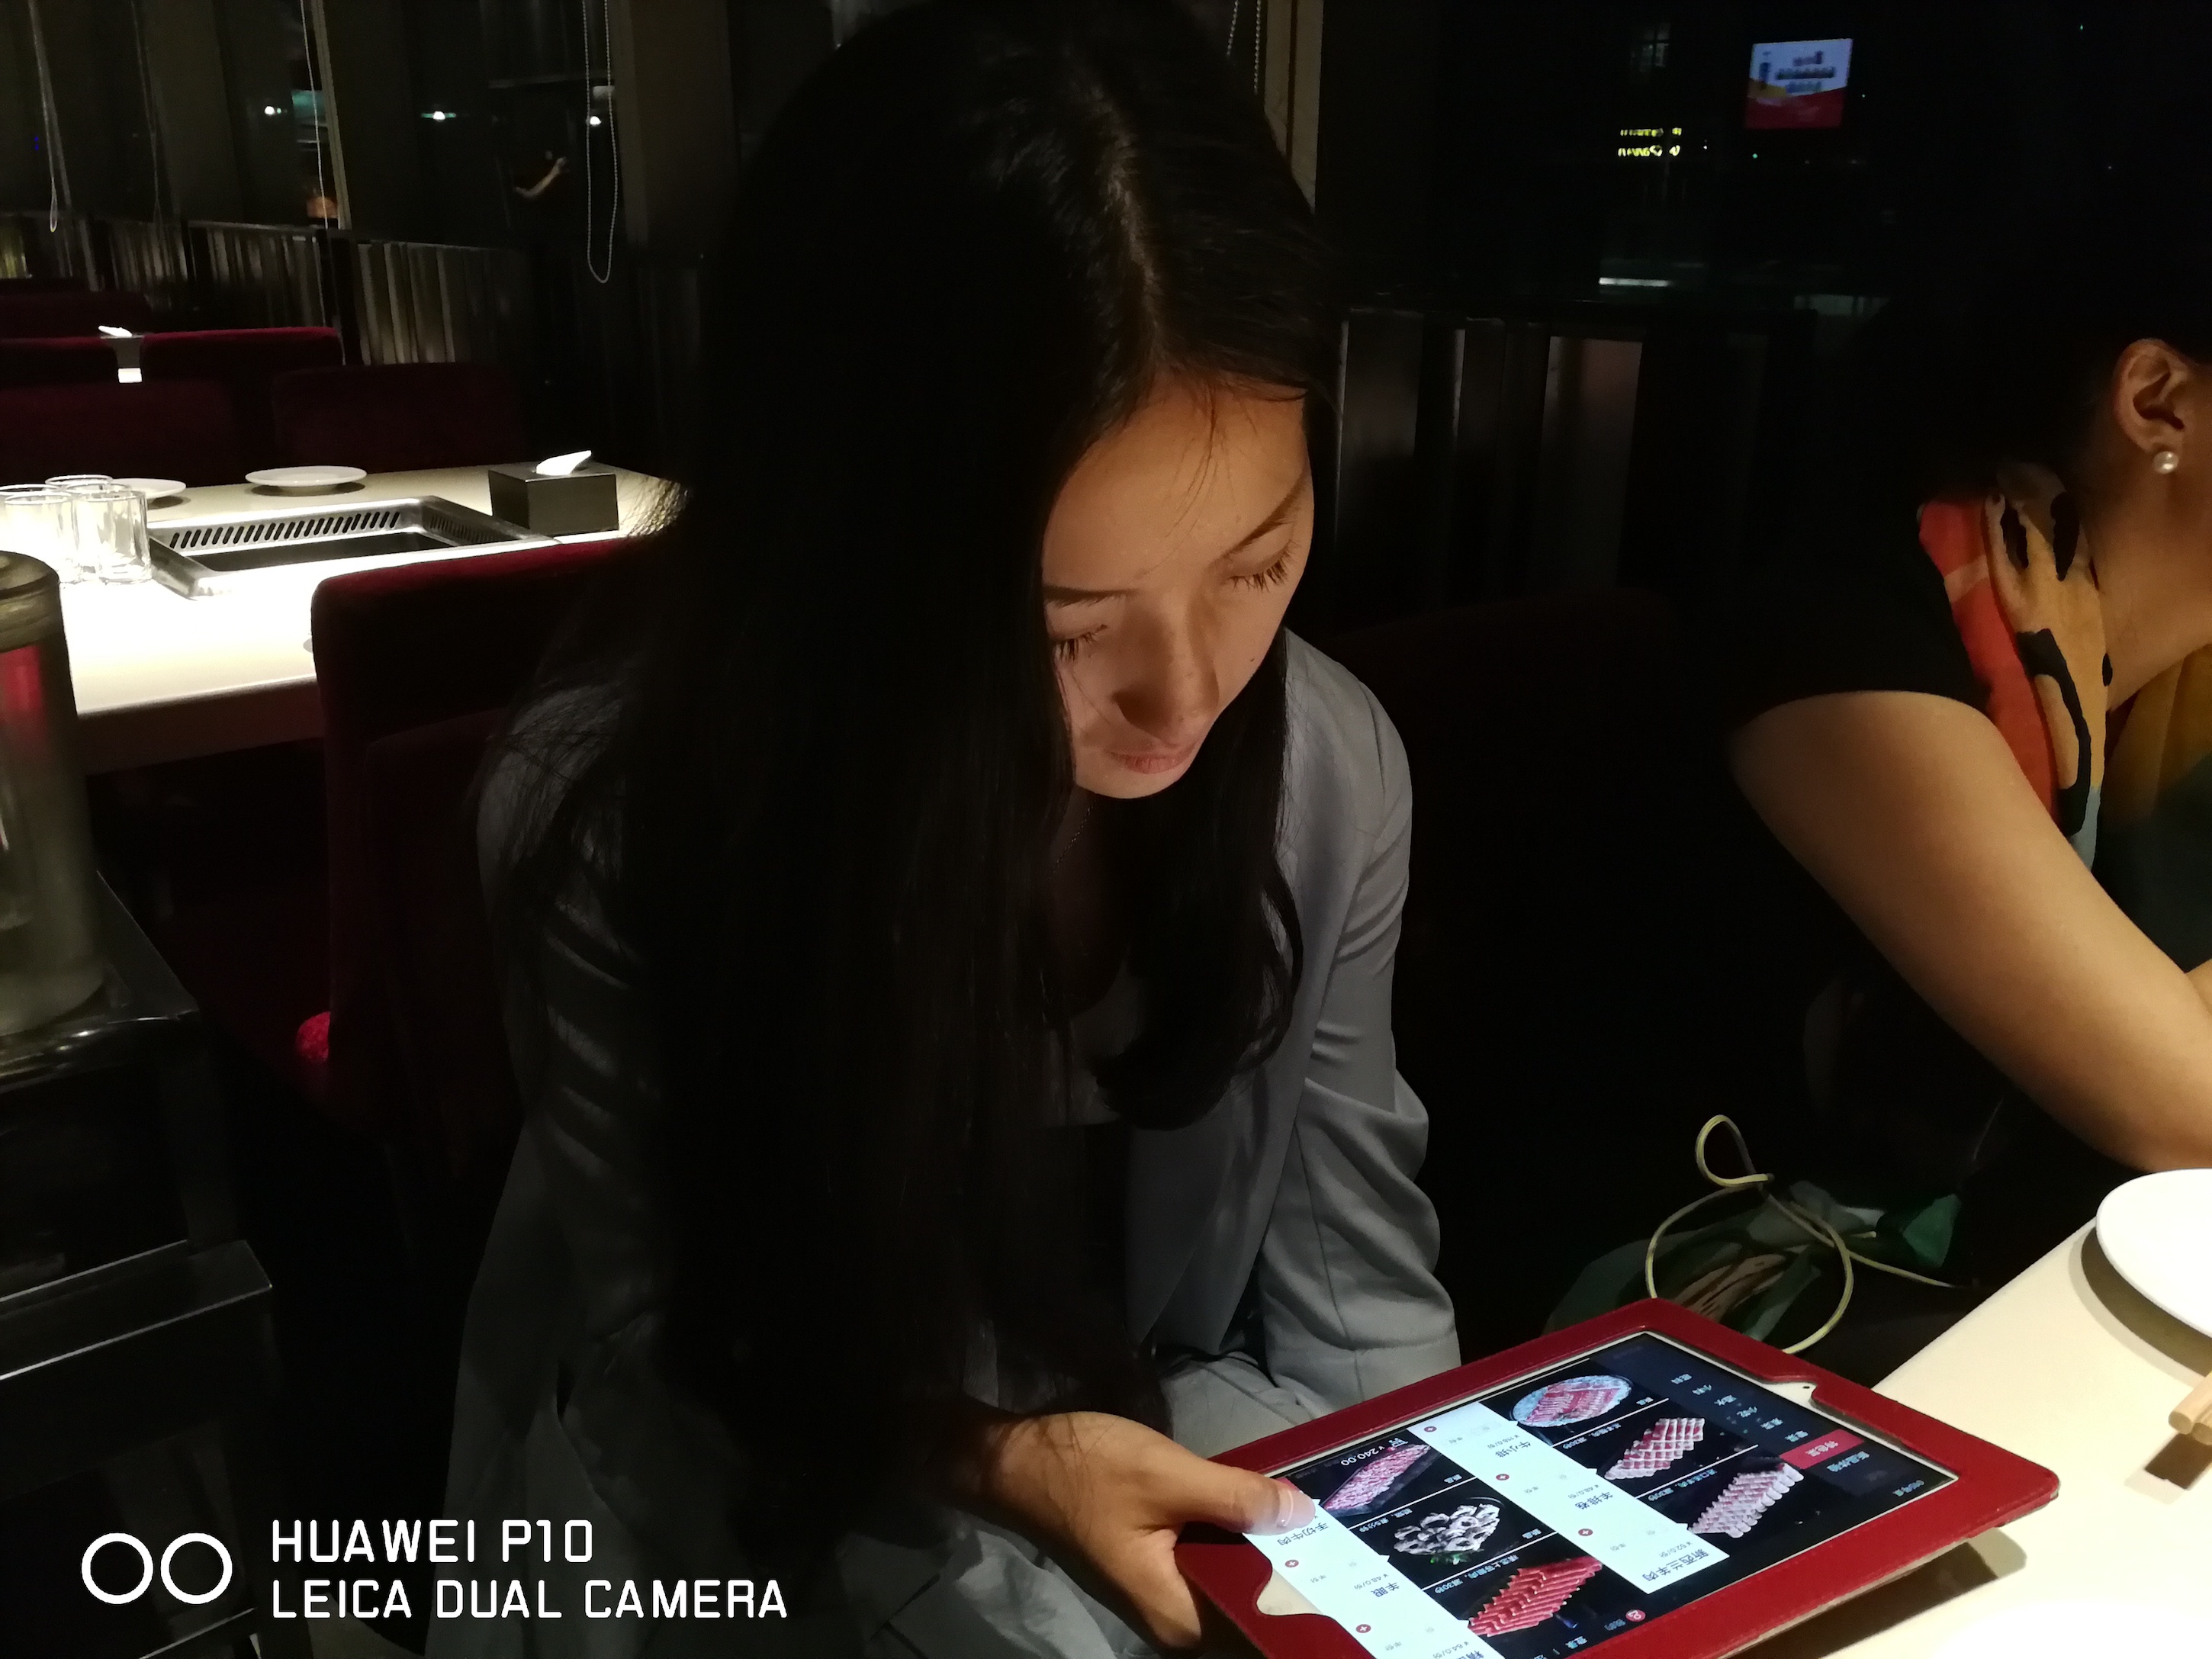 Cao Lang, Gadis Tiongkok Yang Berprofesi sebagai "Mobile Receptionist"